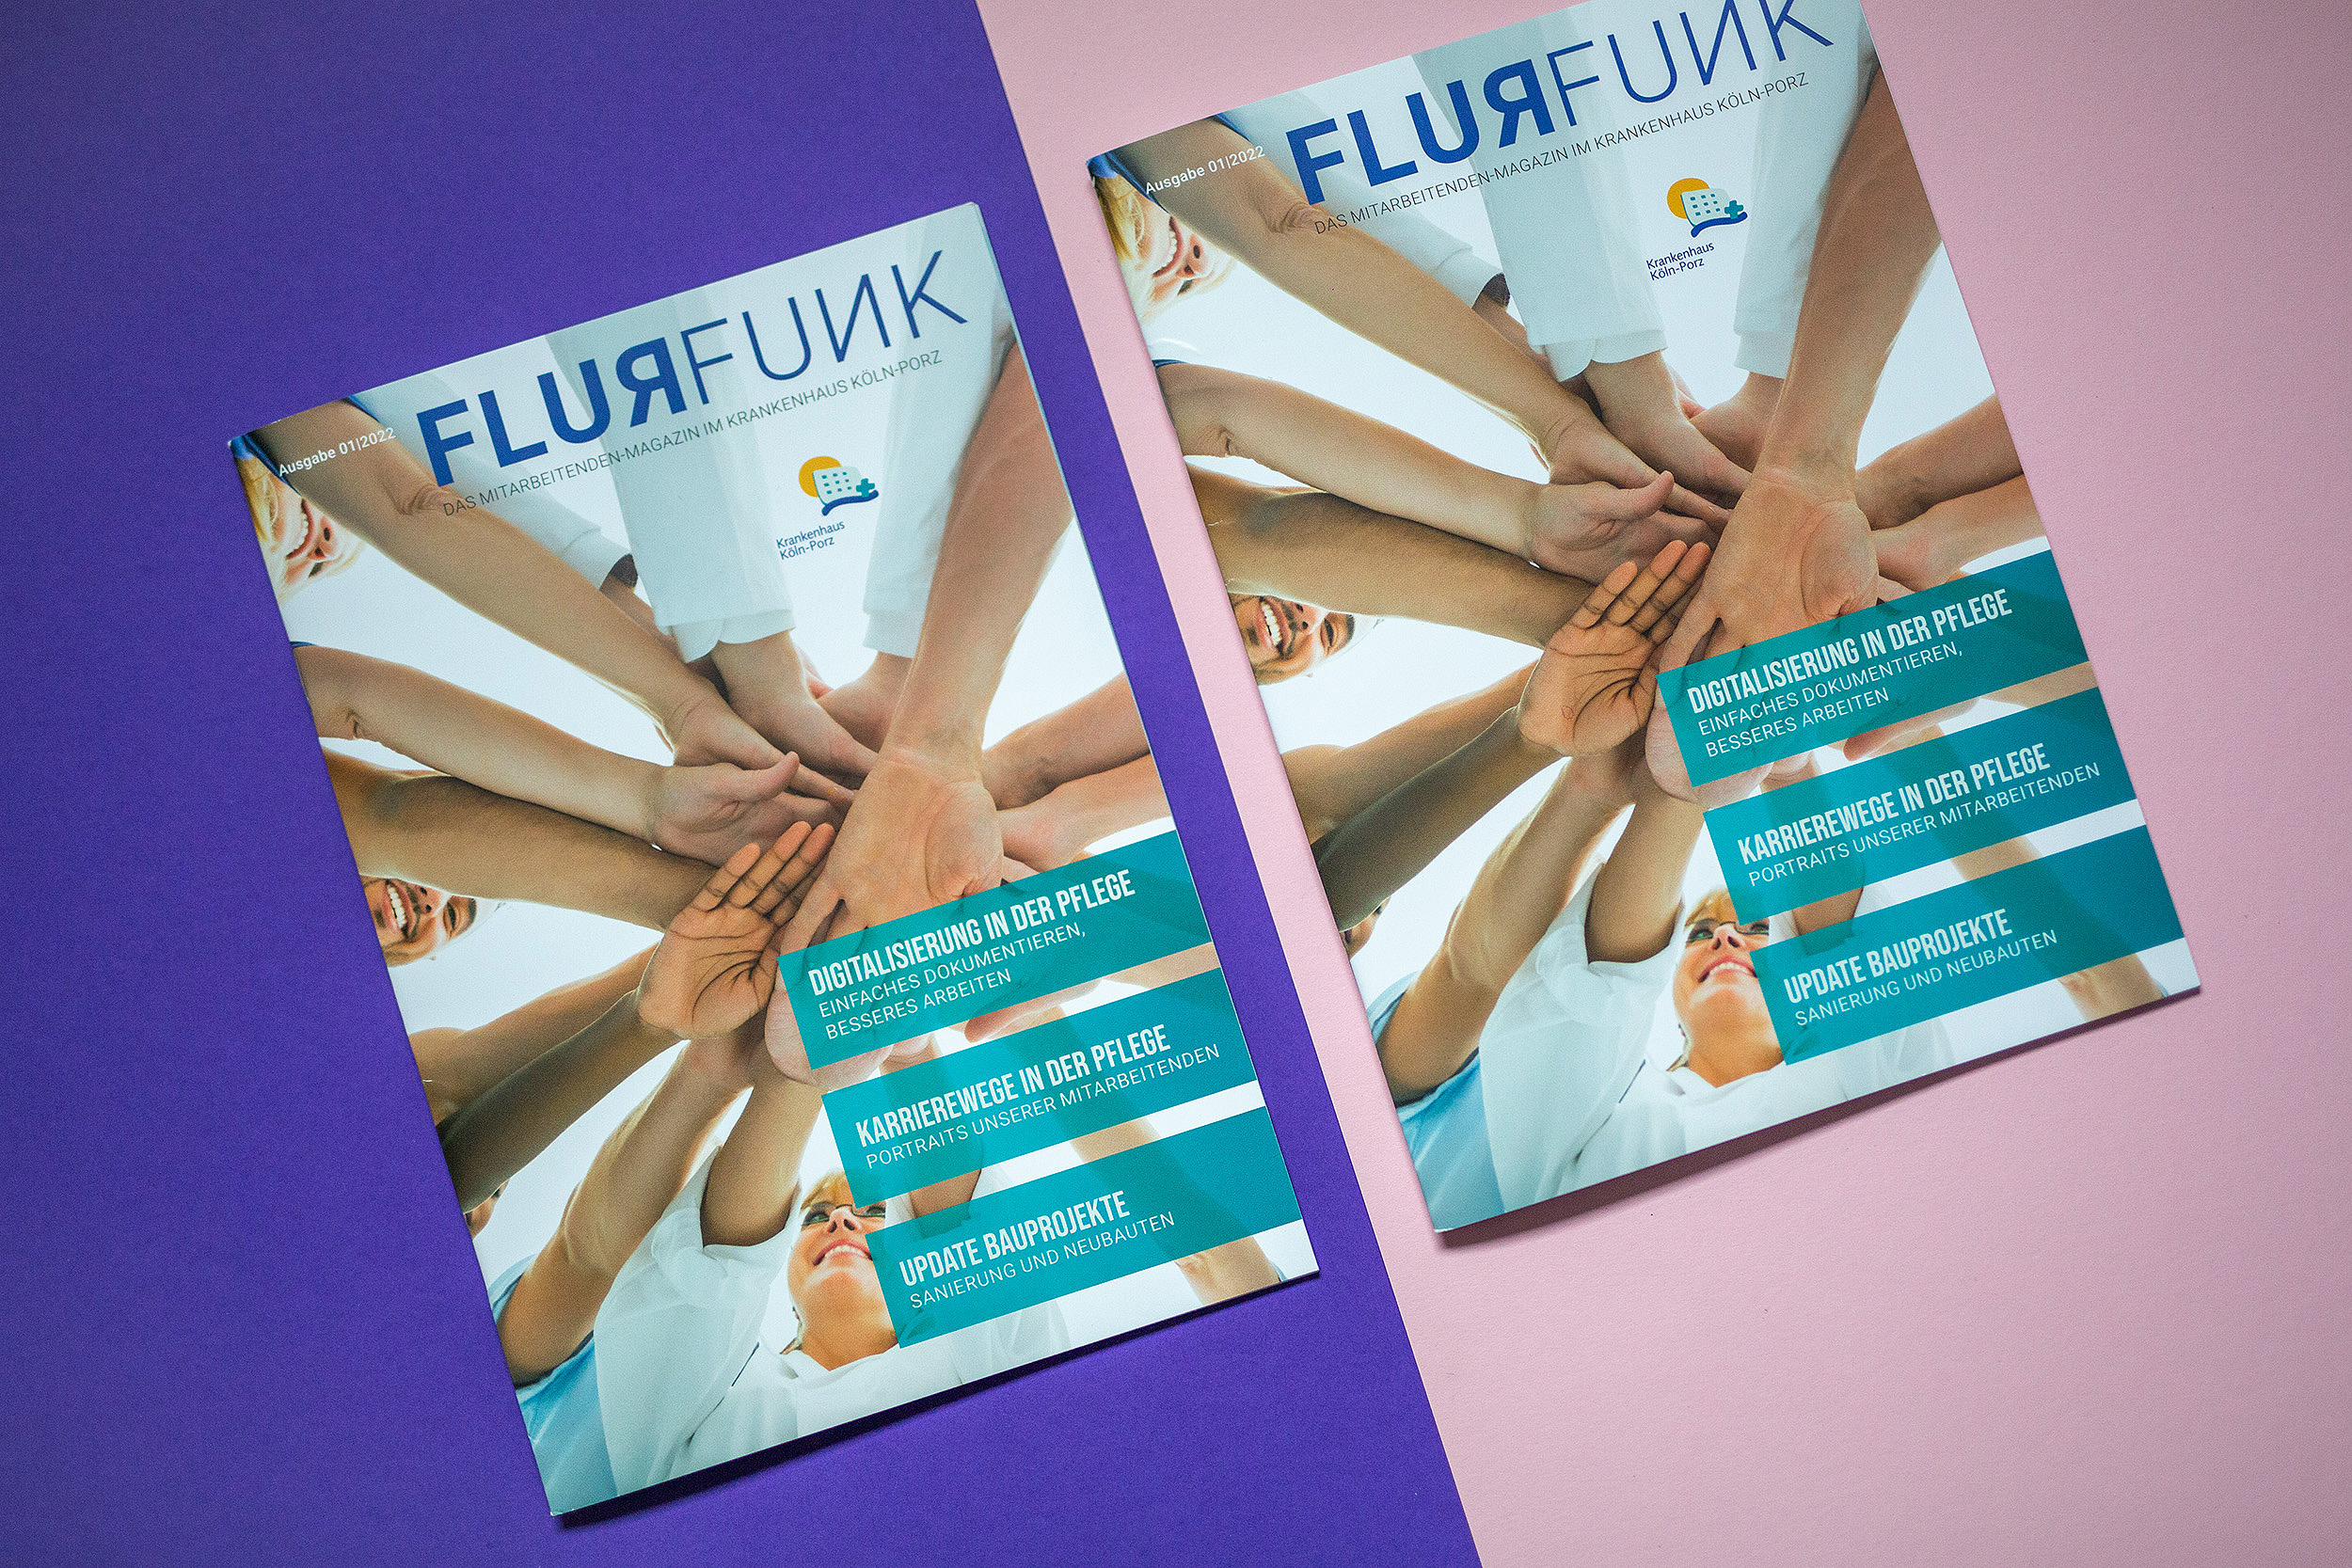 Titelblatt des FLURFUNKs, zwei Magazine auf lila- und rosafarbenem Hintergrund